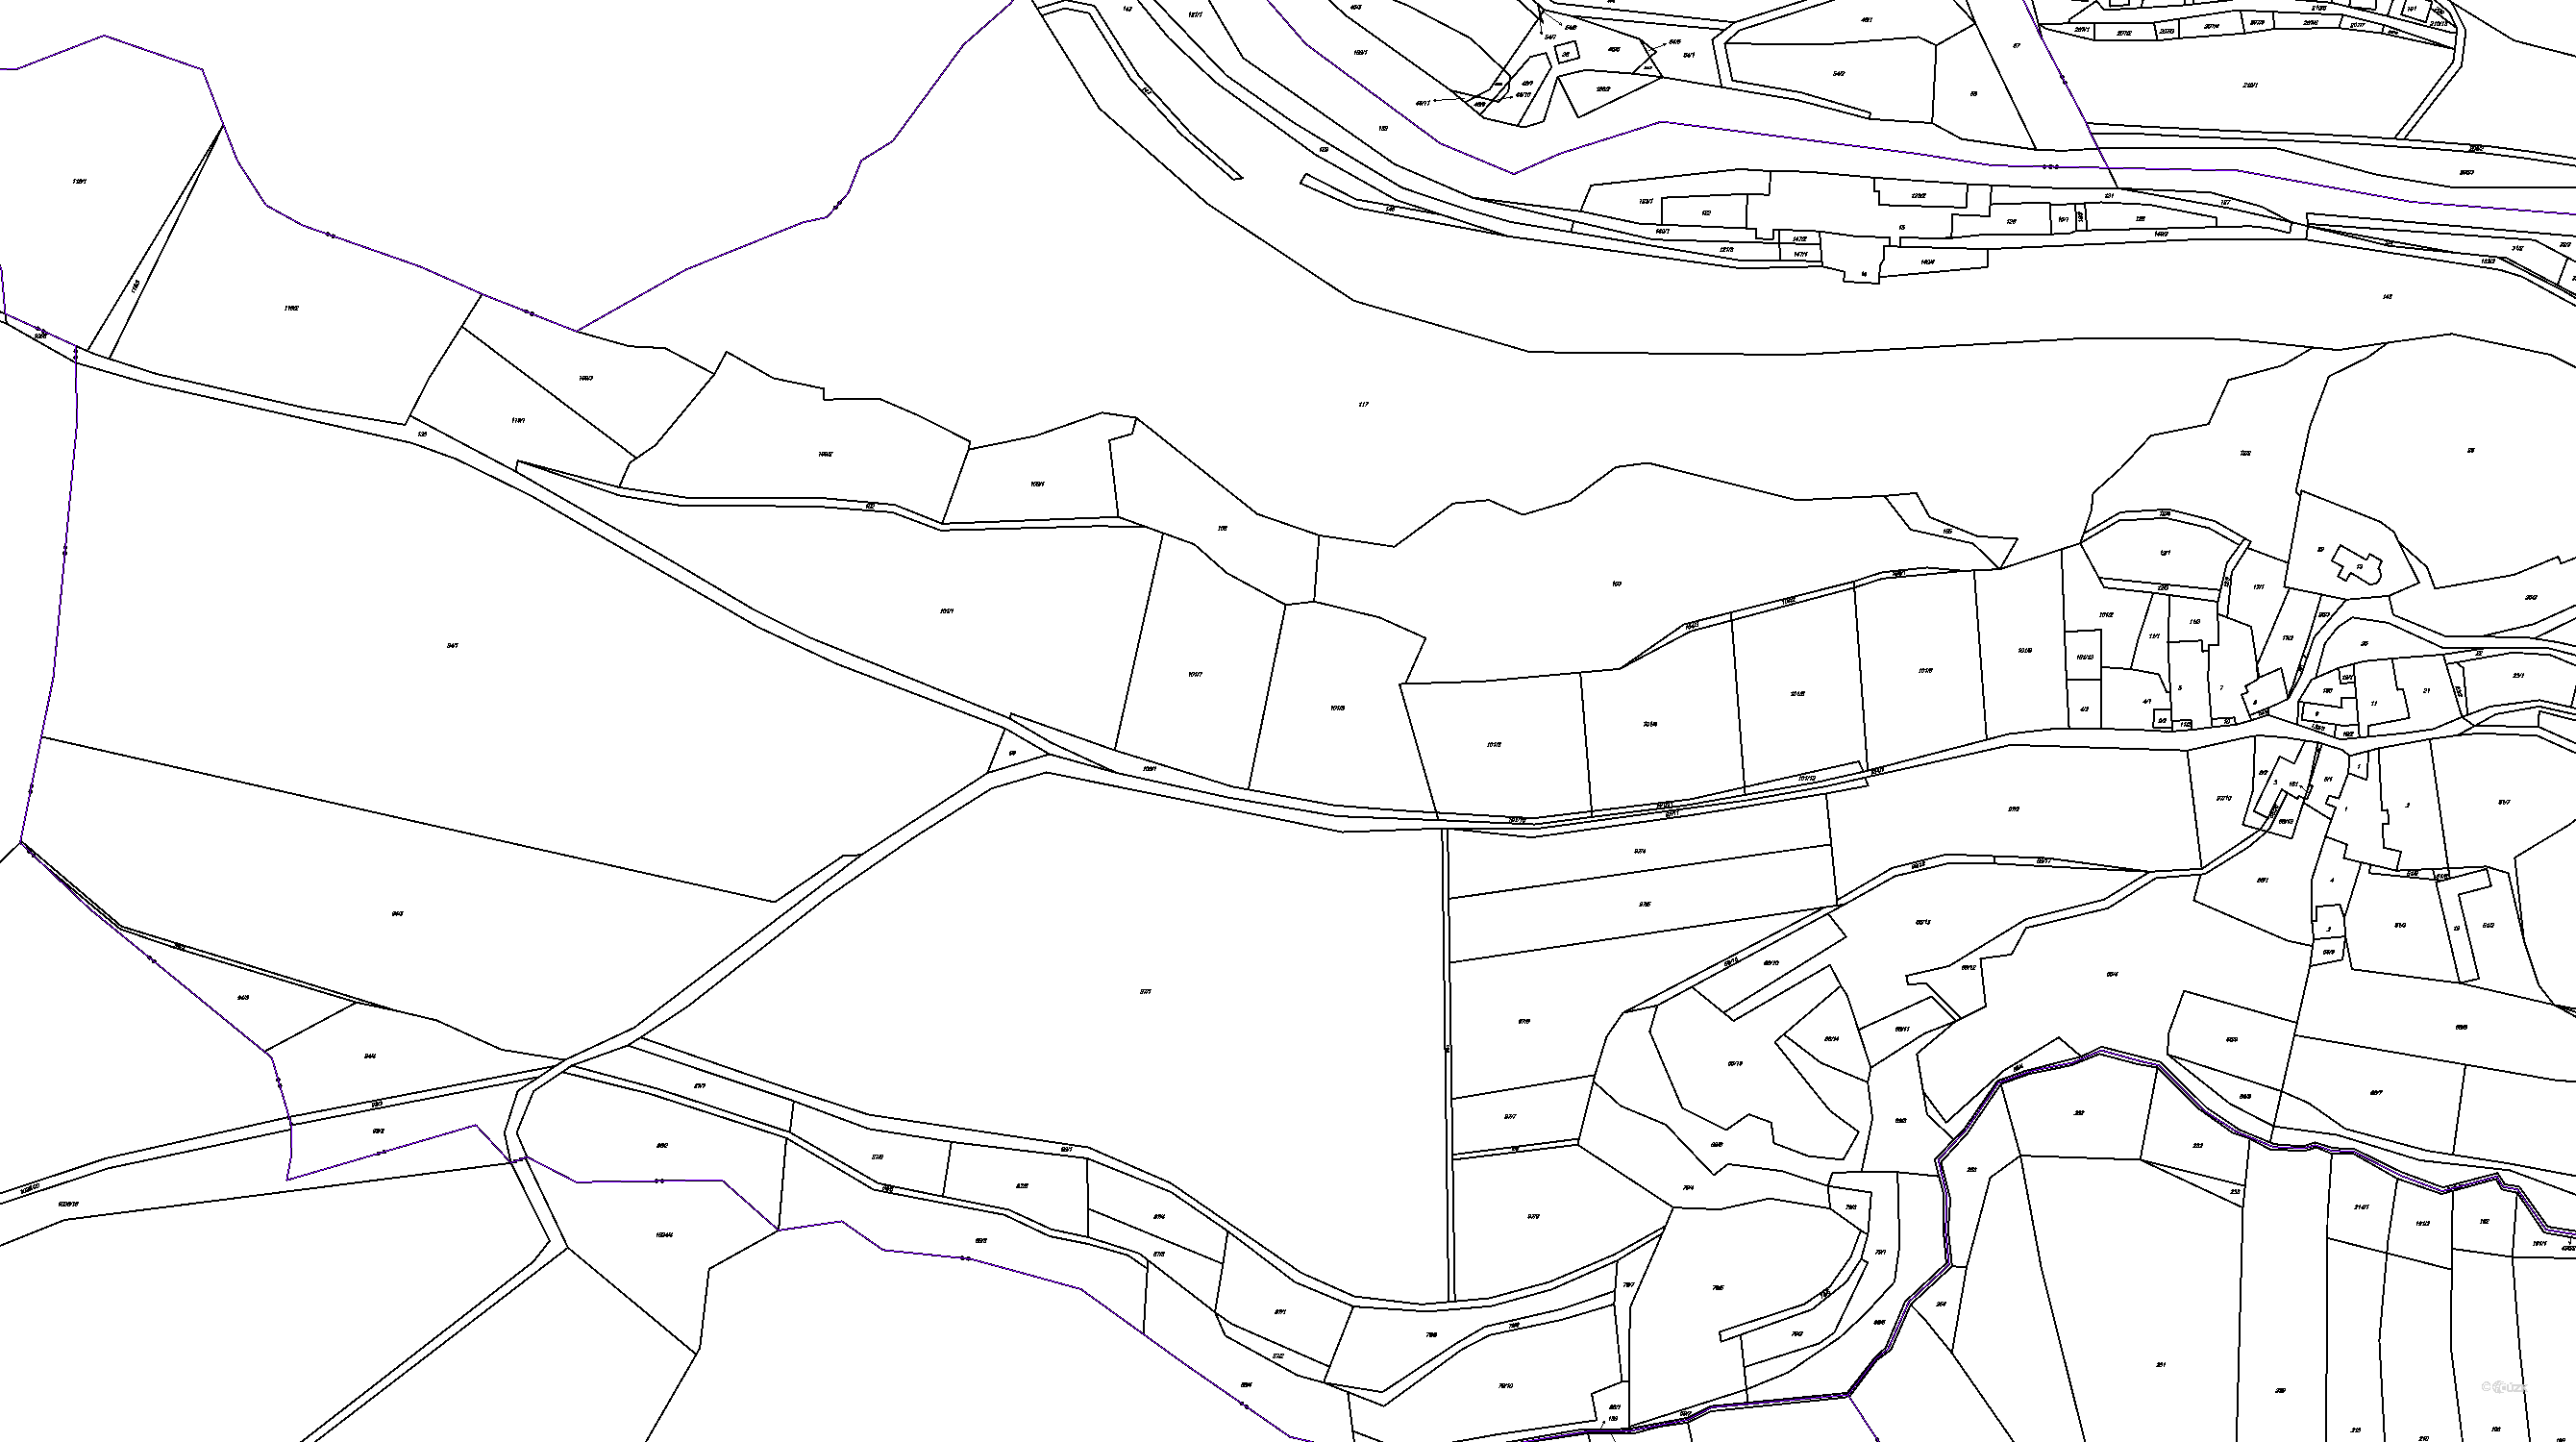 Katastrální mapa pozemků a čísla parcel Petrovice u Jihlavy